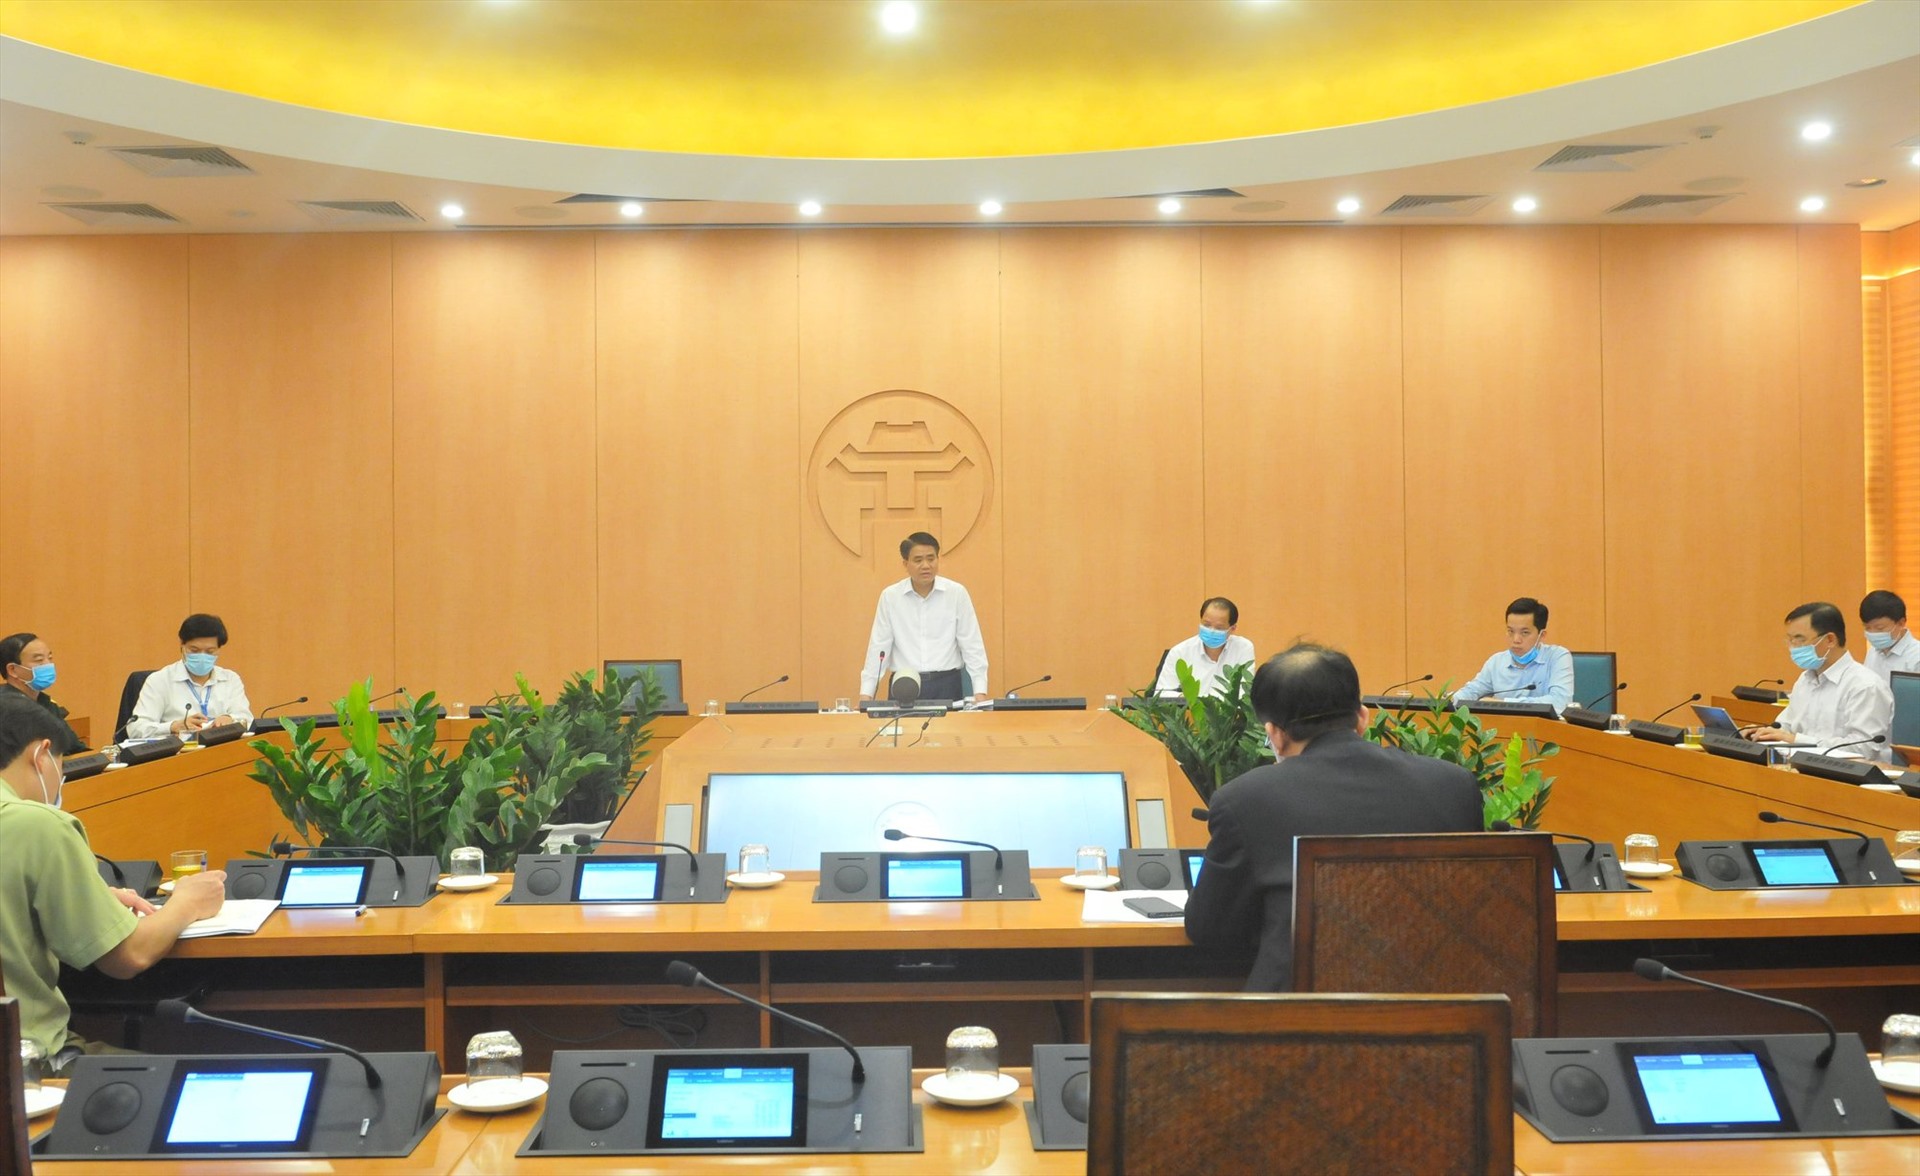 Chủ tịch Hà Nội chỉ đạo các dịch vụ điện, nước, viễn thông cần đảm bảo đầy đủ cho người dân.